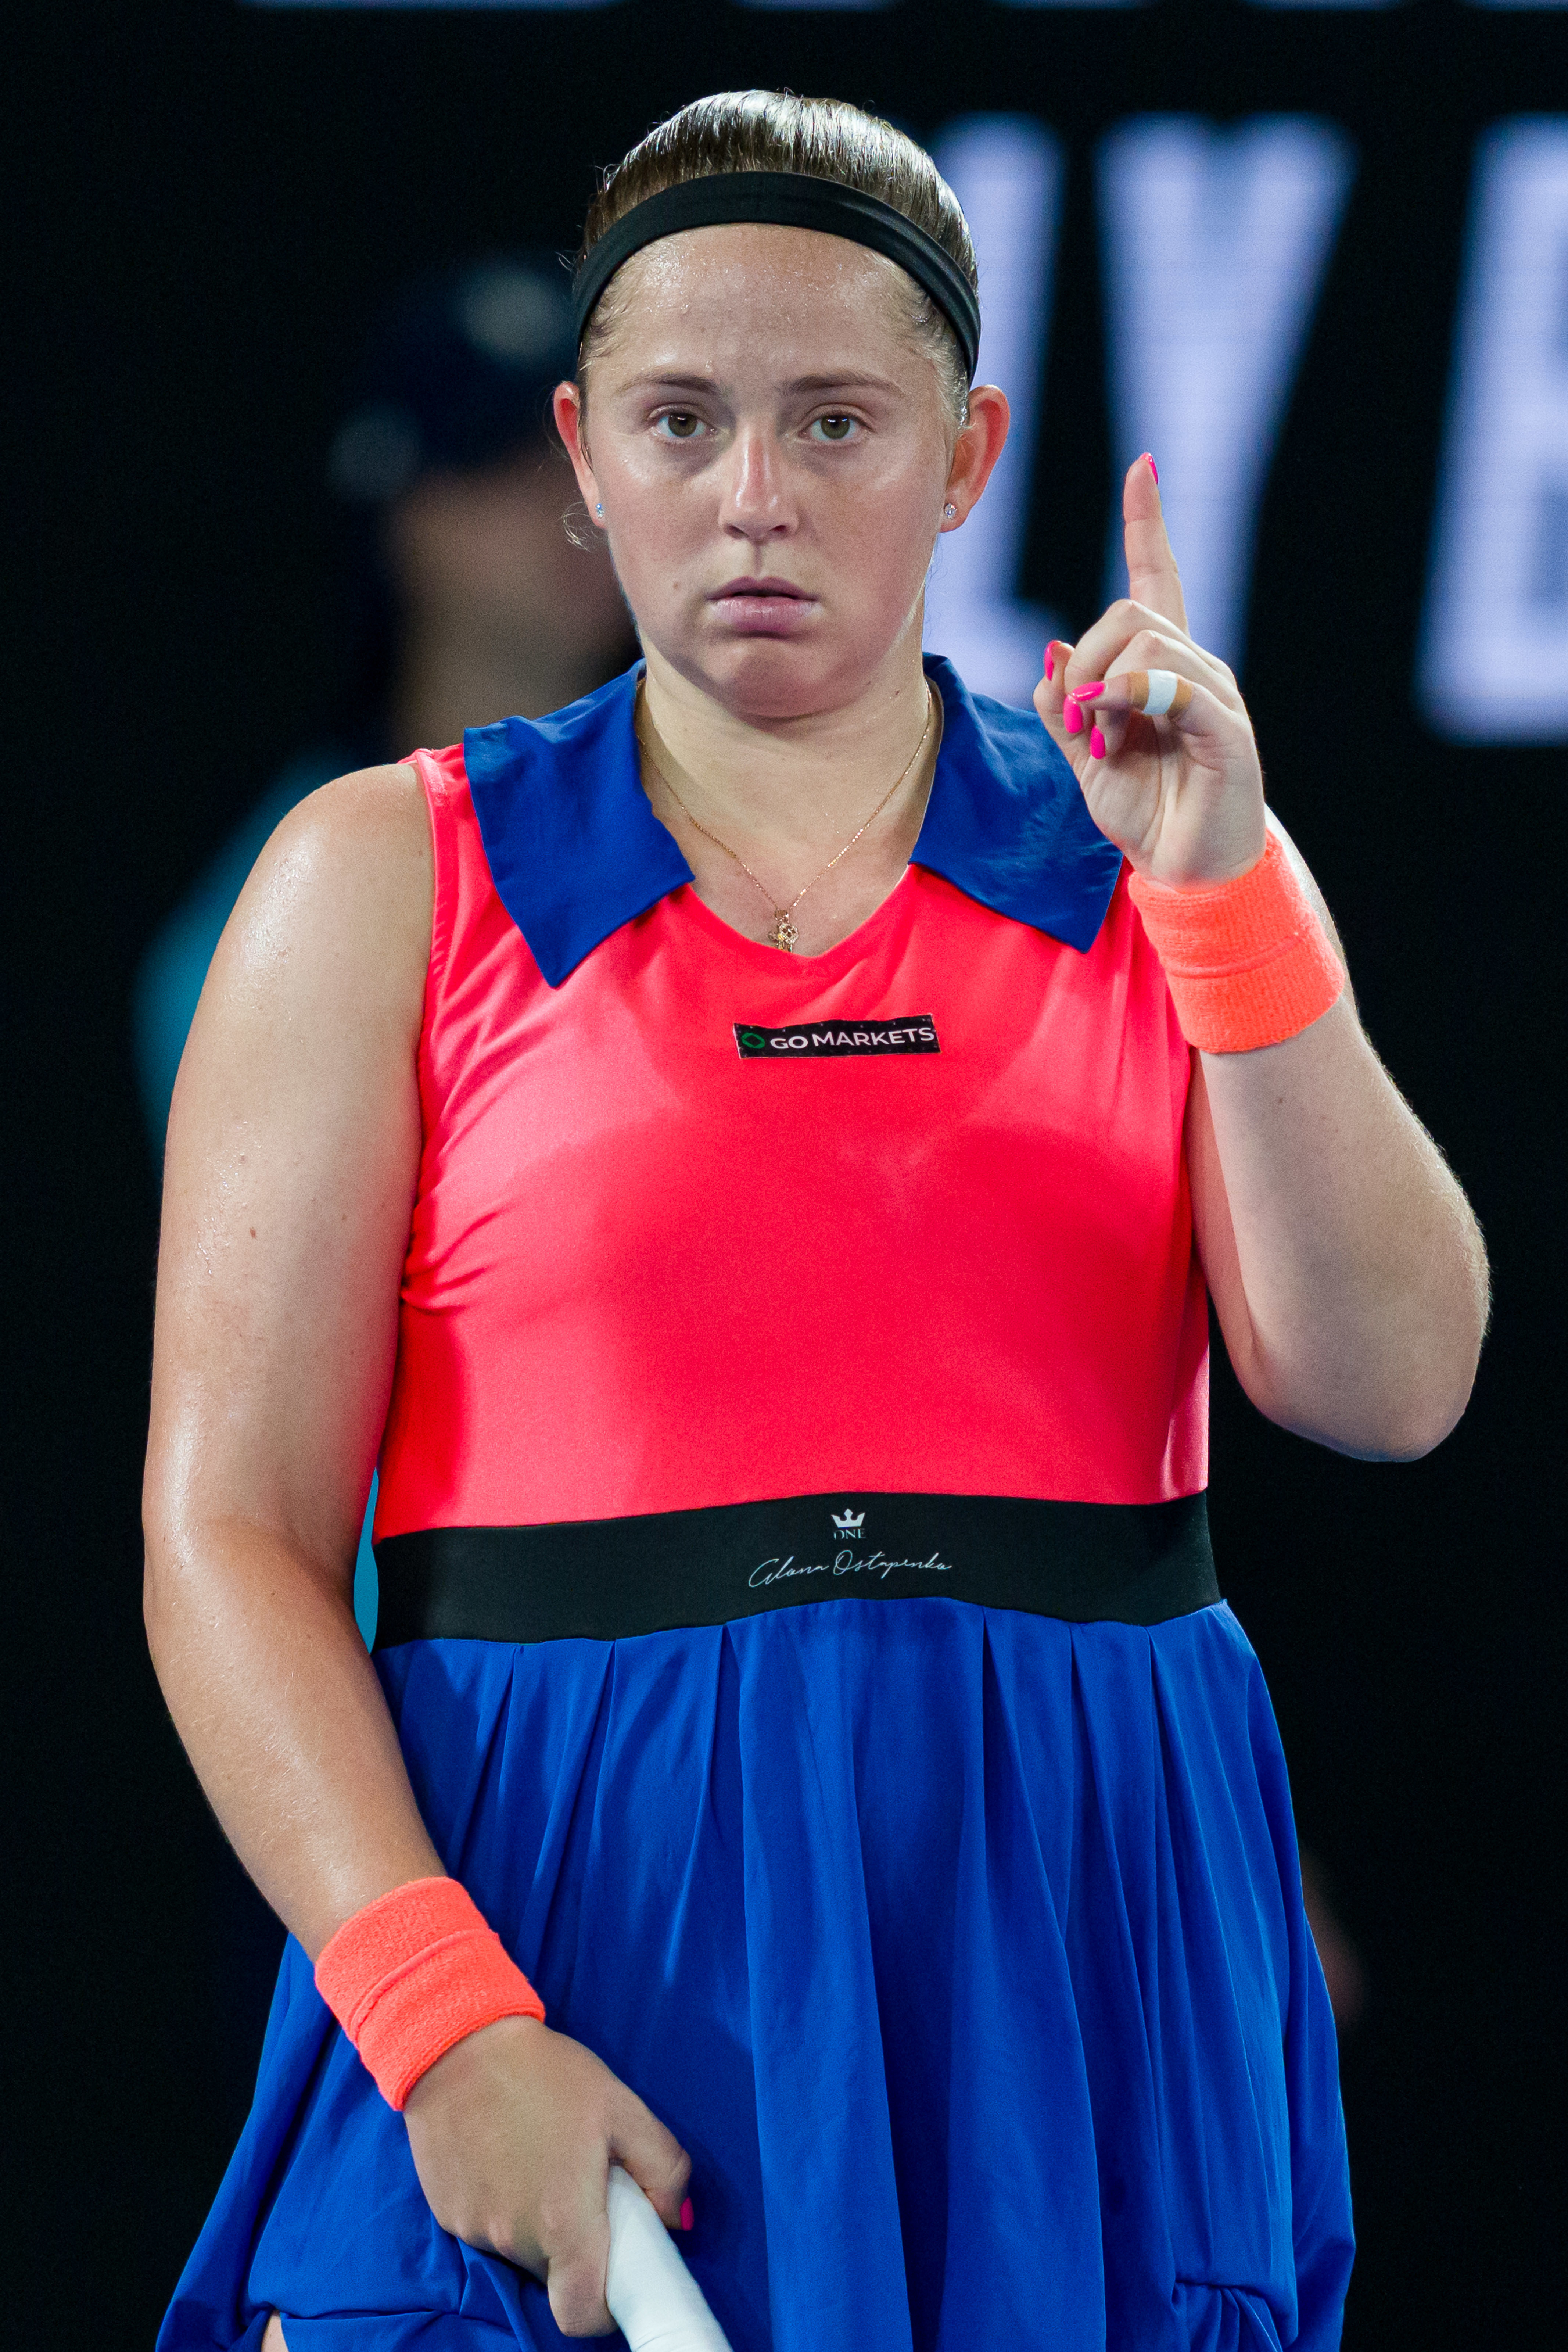 Open d'Australie 2023: Jelena Ostapenko déplore le système d'appel en ligne après sa défaite contre Rybakina: "Je ne suis pas contente"